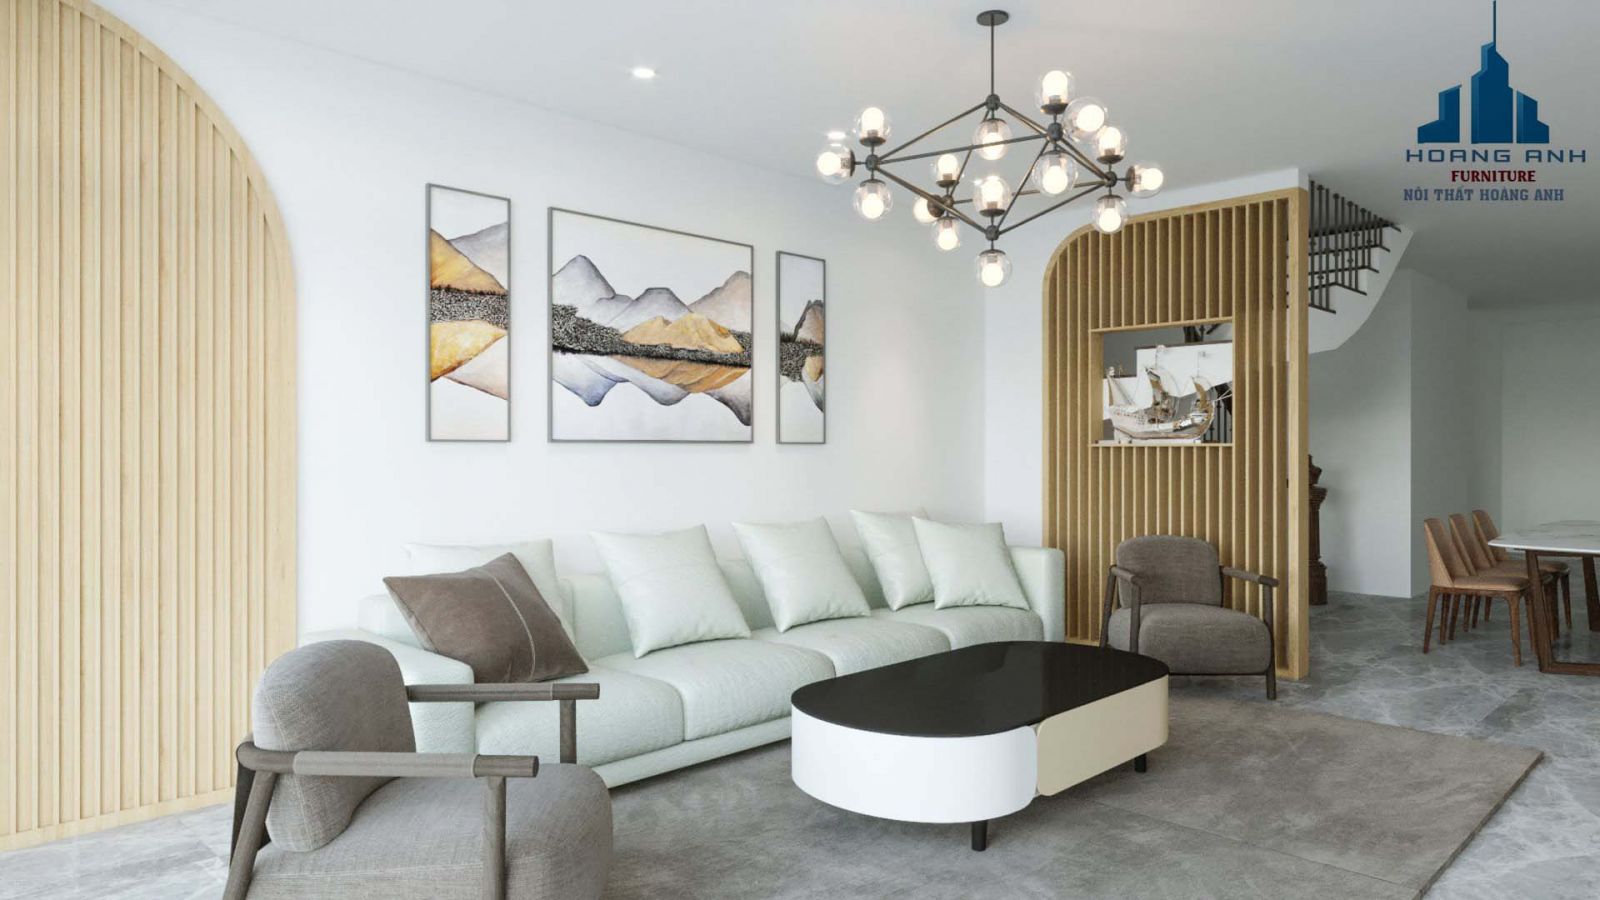 Khu vực phòng khách được thiết kế bộ Sofa mầu vàng kem Nhập Khẩu